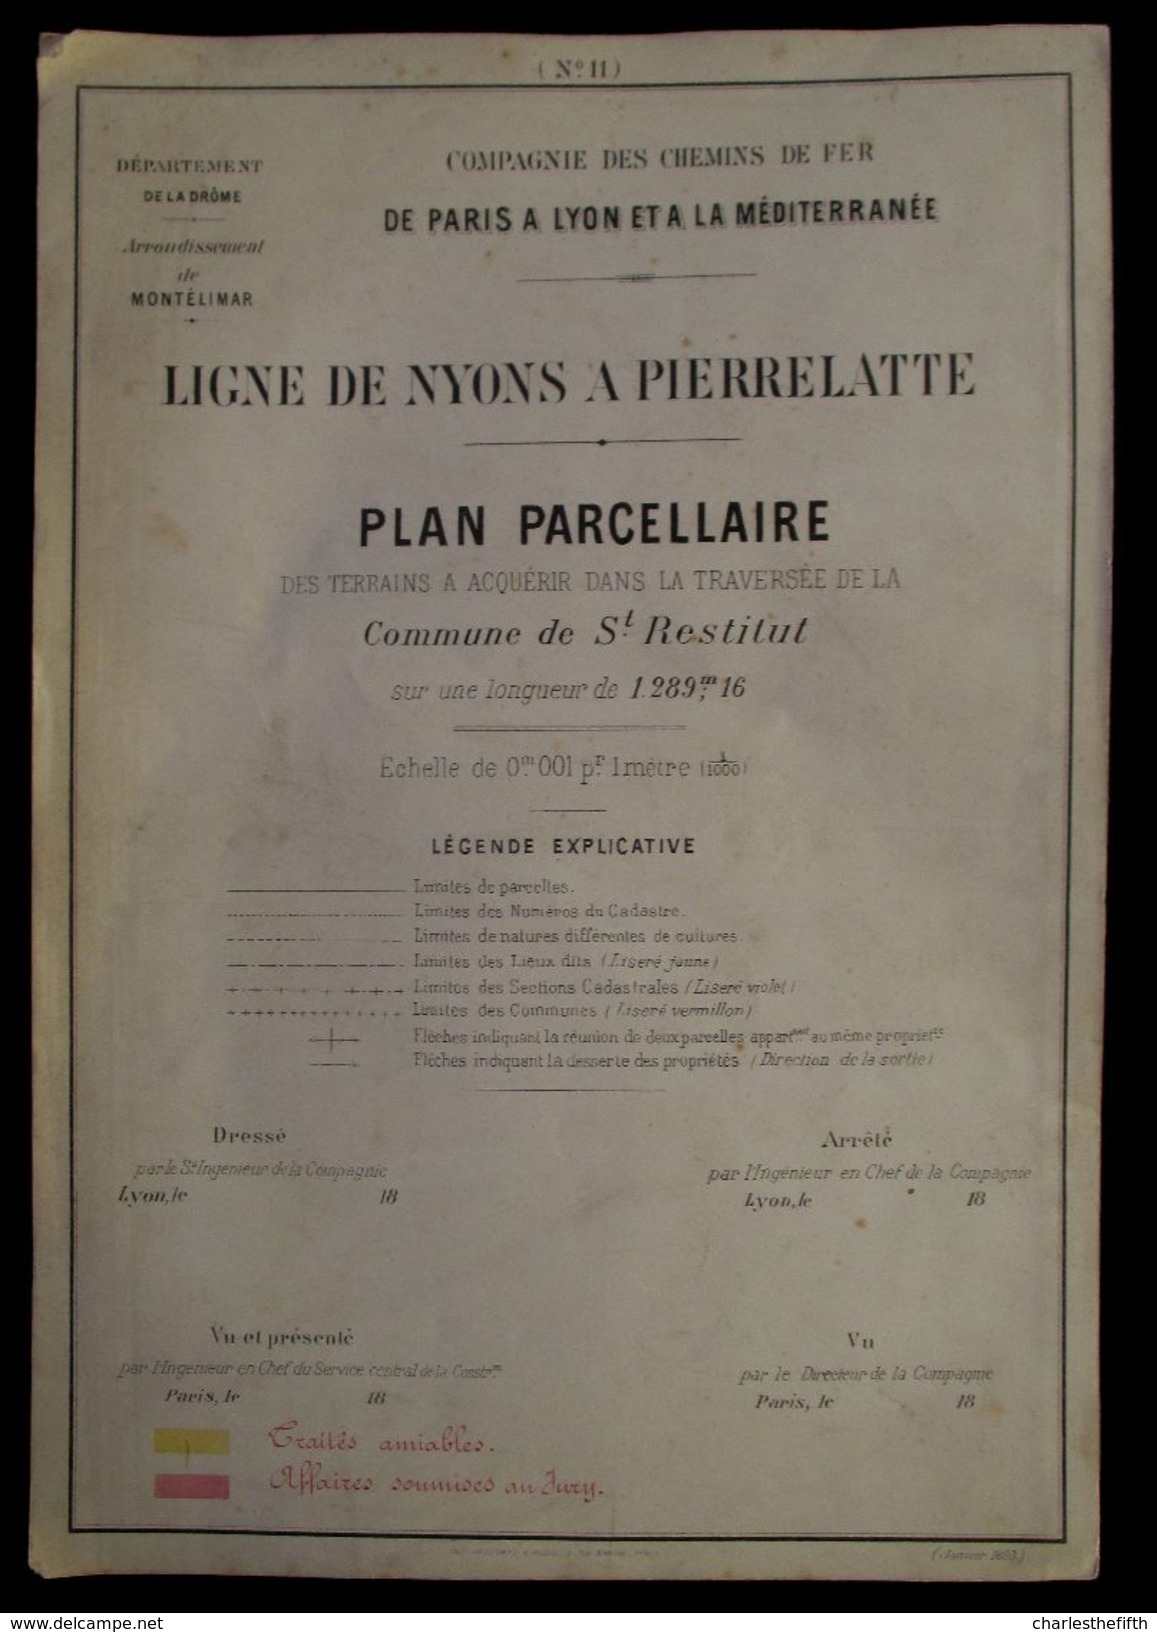 1897 PLAN PARCELLAIRE  CHEMIN DE FER > PARIS A LYON > MEDITERRANEE  COMMUNE DE St - RESTITUT ( St - Paul 3 Chateaux ) - Documentos Históricos